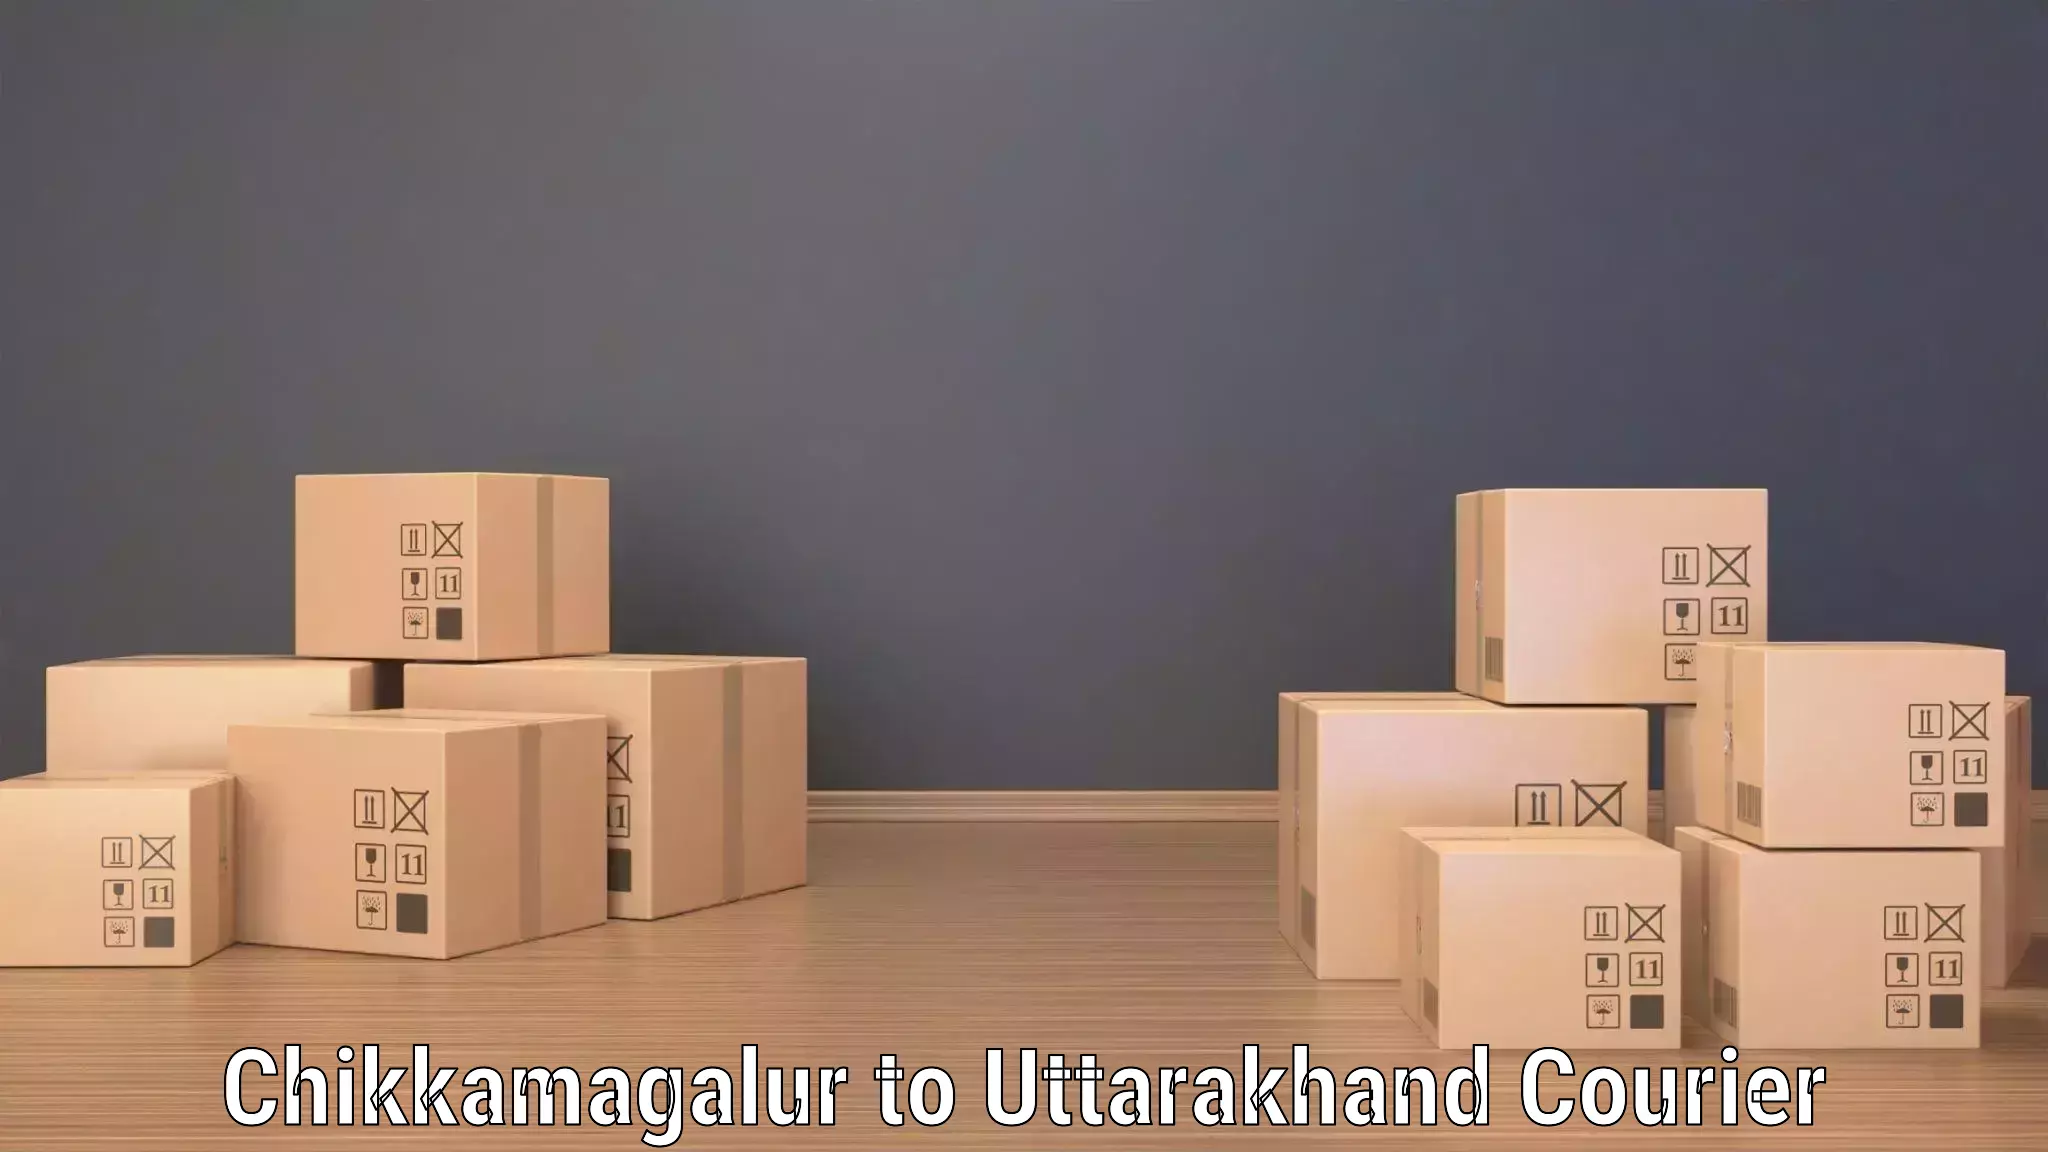 Regular parcel service Chikkamagalur to Bageshwar